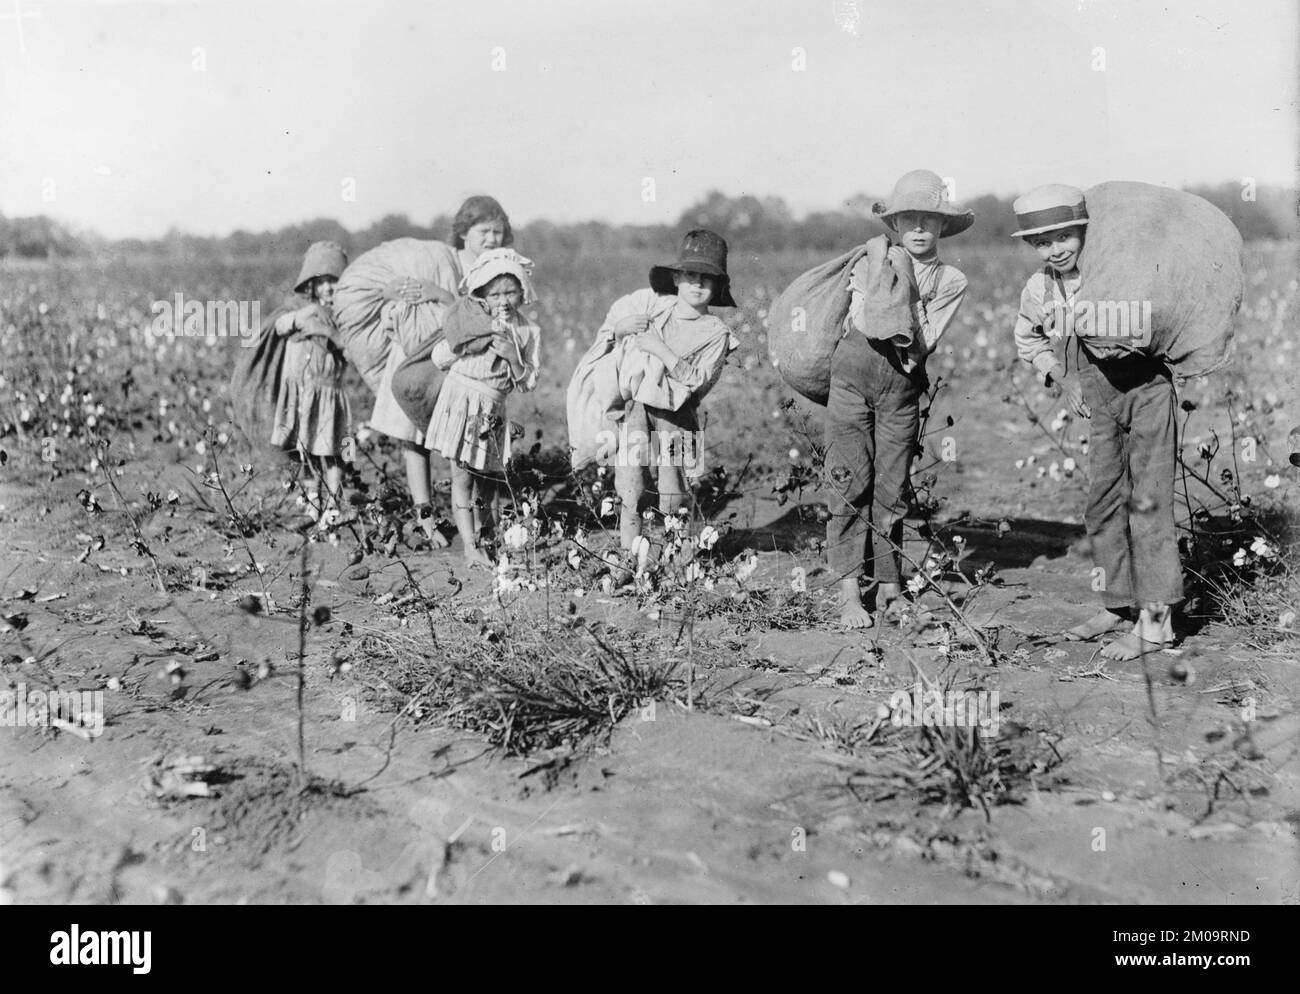 Ein klassisches Foto, das etwa 1909 ausgestellt wurde und zeigt, wie amerikanische Kinder für kinderarbeit beim Baumwollpflücken auf einem Feld im Süden der USA verwendet werden Stockfoto